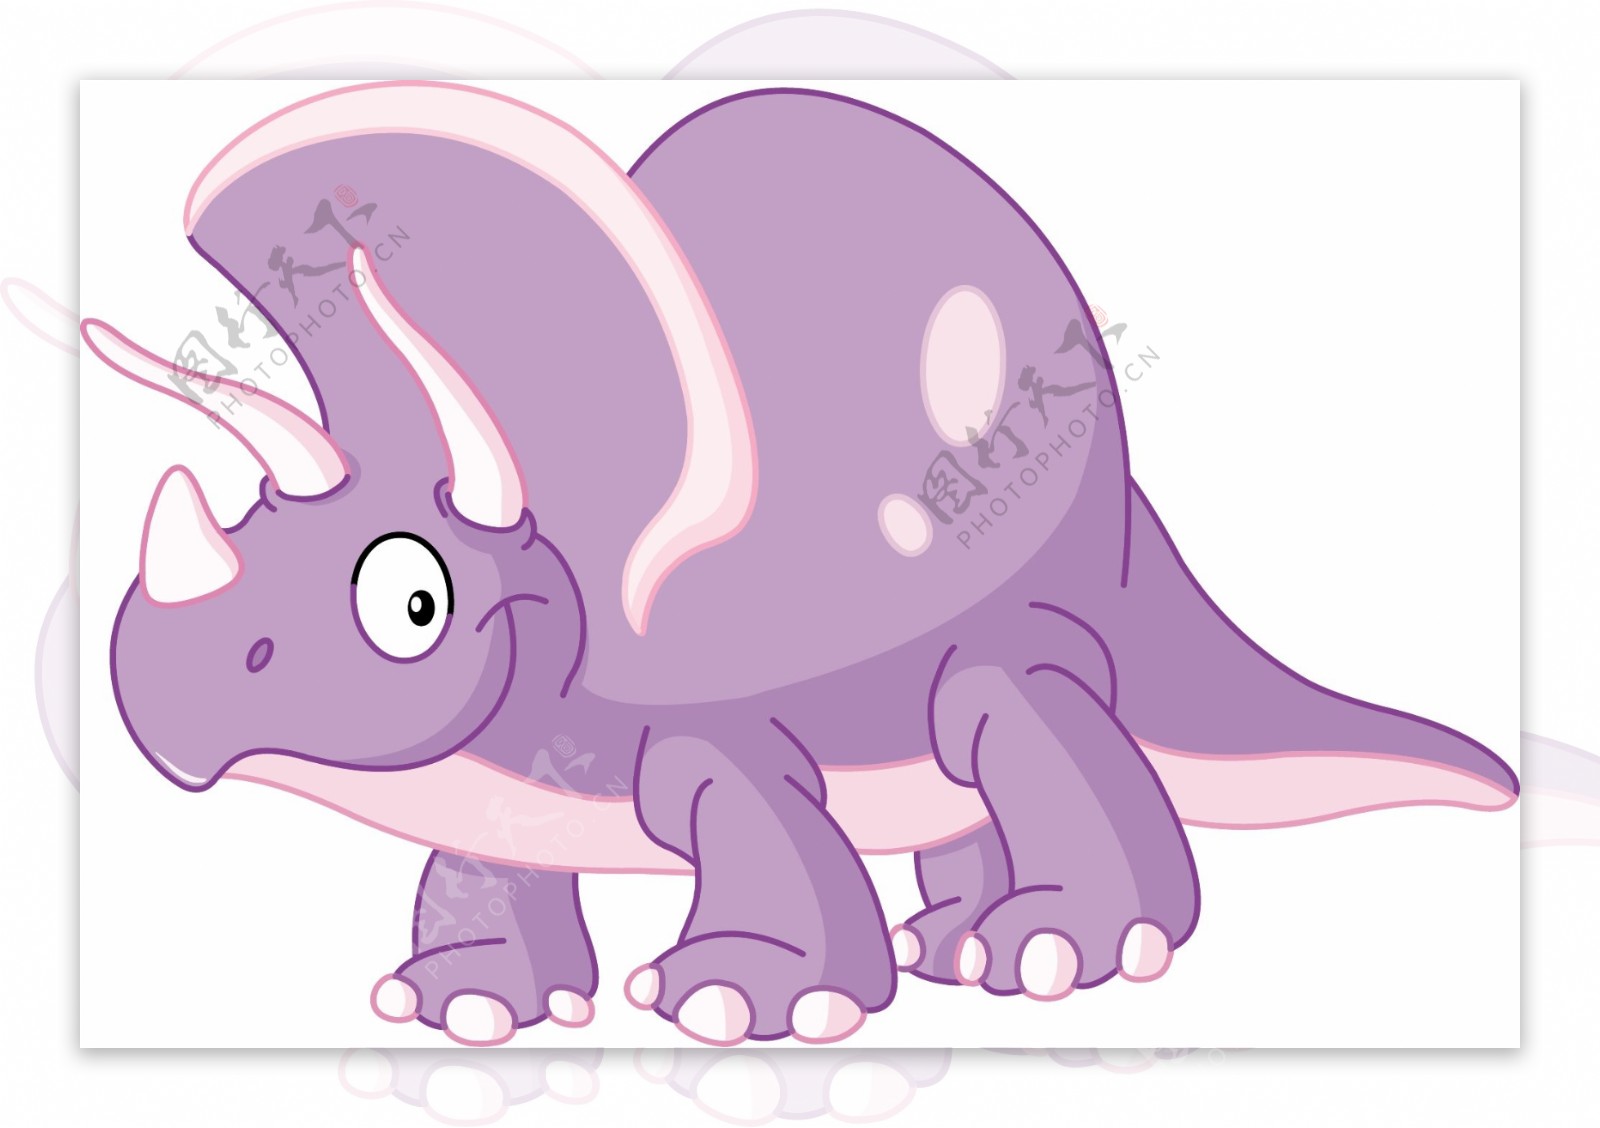 紫色可爱恐龙